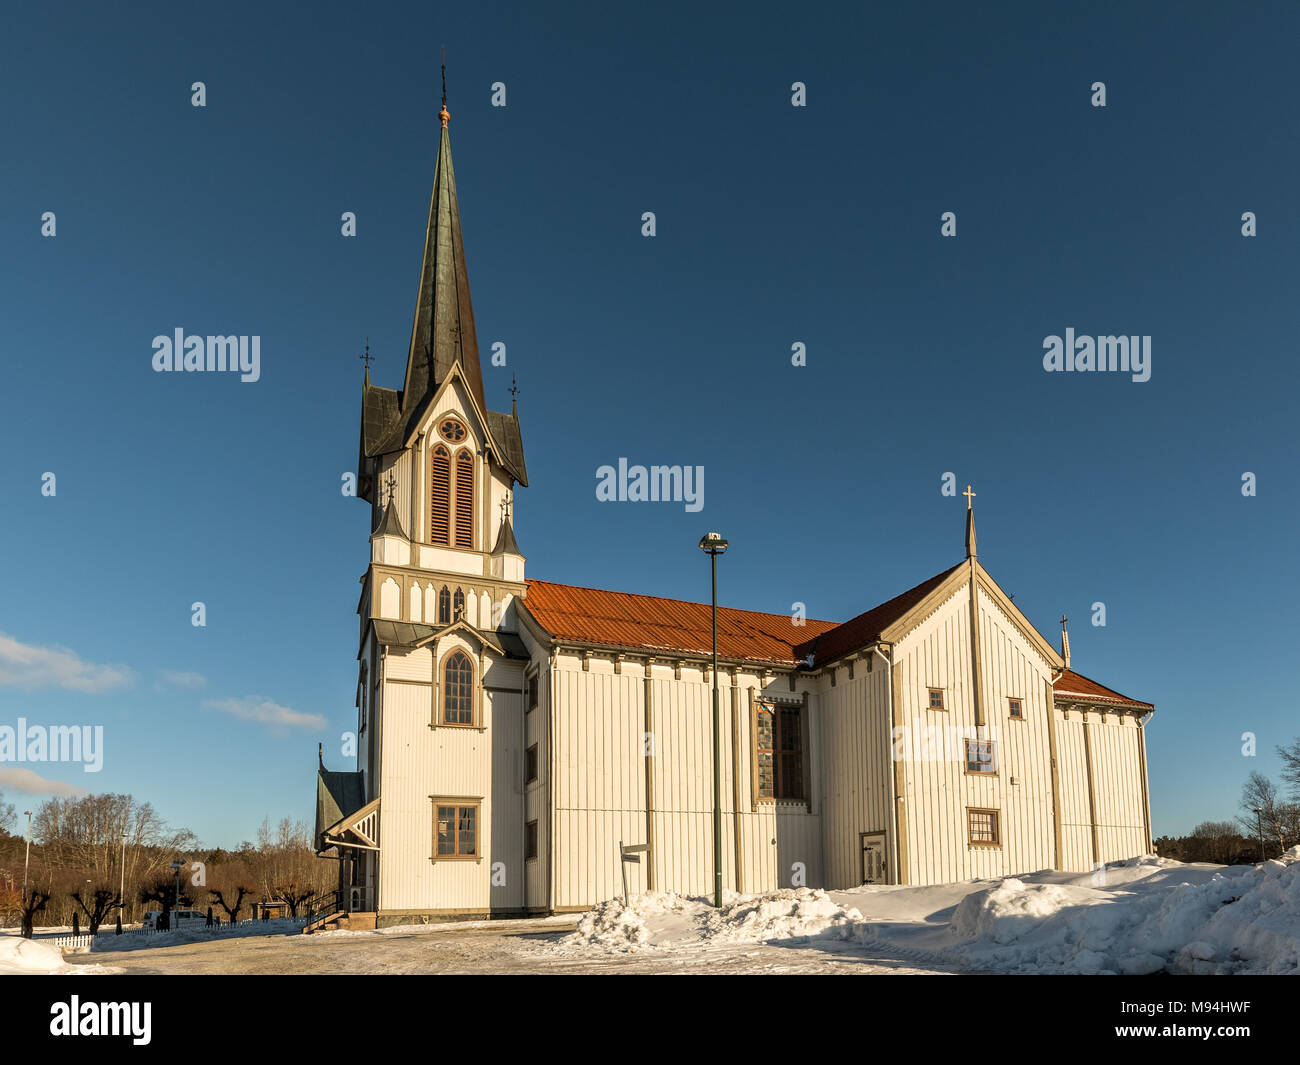 Église Bamble, grande église en bois buildt en 1845. L'hiver, la neige, soleil et ciel bleu. Vue de côté. Image horizontale. Banque D'Images